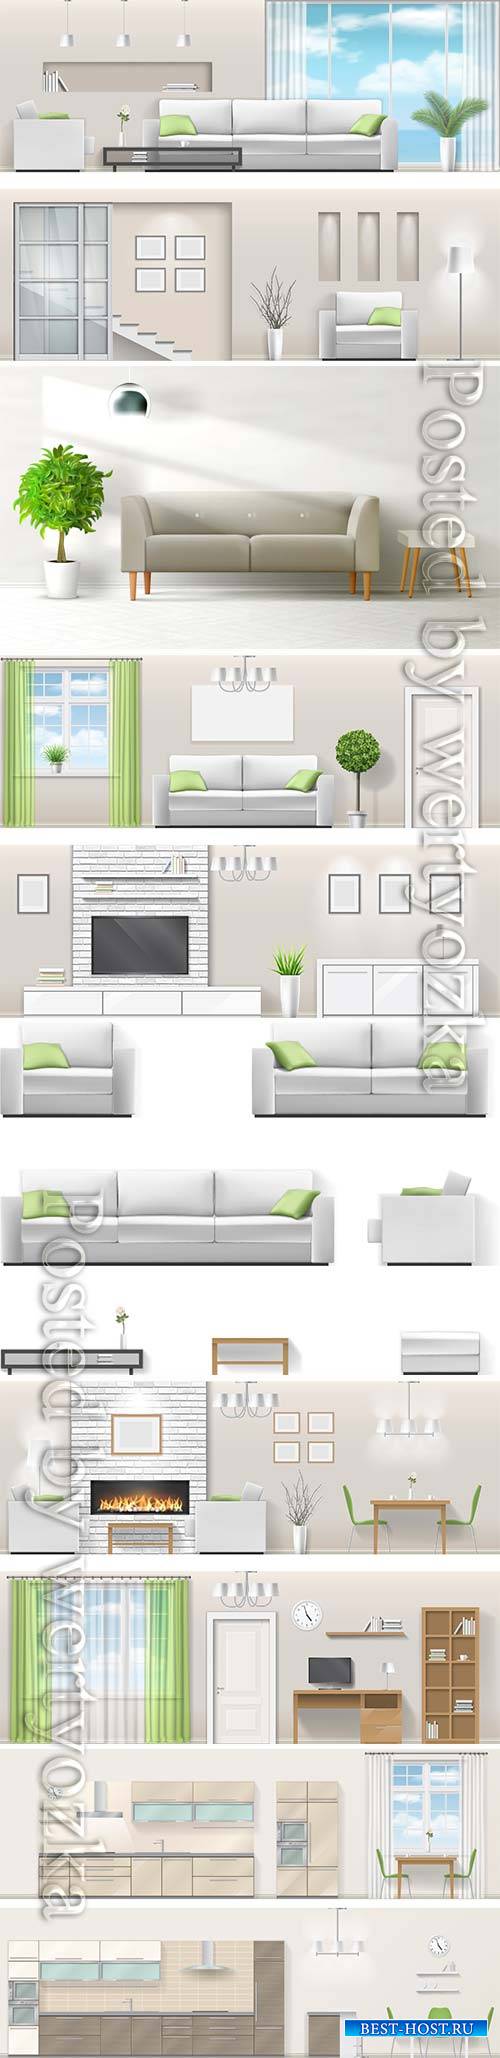 Modern interior in vector, kitchen, living room, bedroom